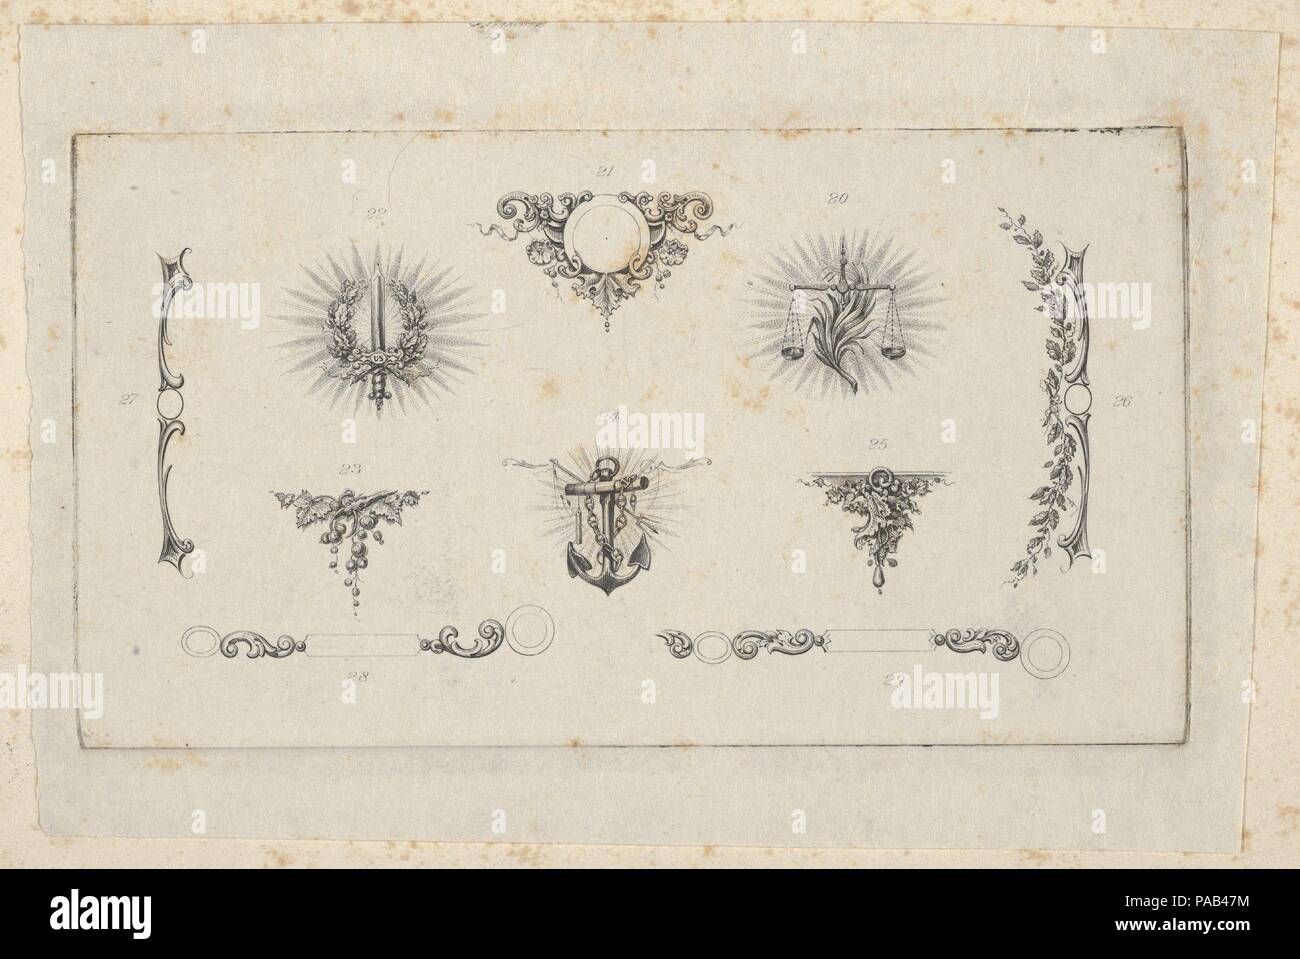 Banknote Motiv: zehn verschiedene Zierpflanzen Drehmaschine arbeiten Elemente einschließlich einer Festplatte mit Beeren und Blumen verziert, einem goldenen Schwert, eine Waage, eine tragende Rebe, ein Anker und Kette, eine Halterung von weinblätter und vier Entwürfe für Grenzen. Artist: Verbunden mit Cyrus Durand (American, 1787-1868). Abmessungen: Platte: 2 7/16 x 4 7/16 in. (6,2 x 11,3 cm): 4 x 5 1/2 in. (10,2 x 14 cm). Drucker: Gedruckt von A. B.&C. Durand & Company (Amerikanische, aktive 1824-27); Gedruckt von Durand, Perkins, und Firma (New York). Datum: Ca. 1824-42. Museum: Metropolitan Museum of Art, New York, USA. Stockfoto